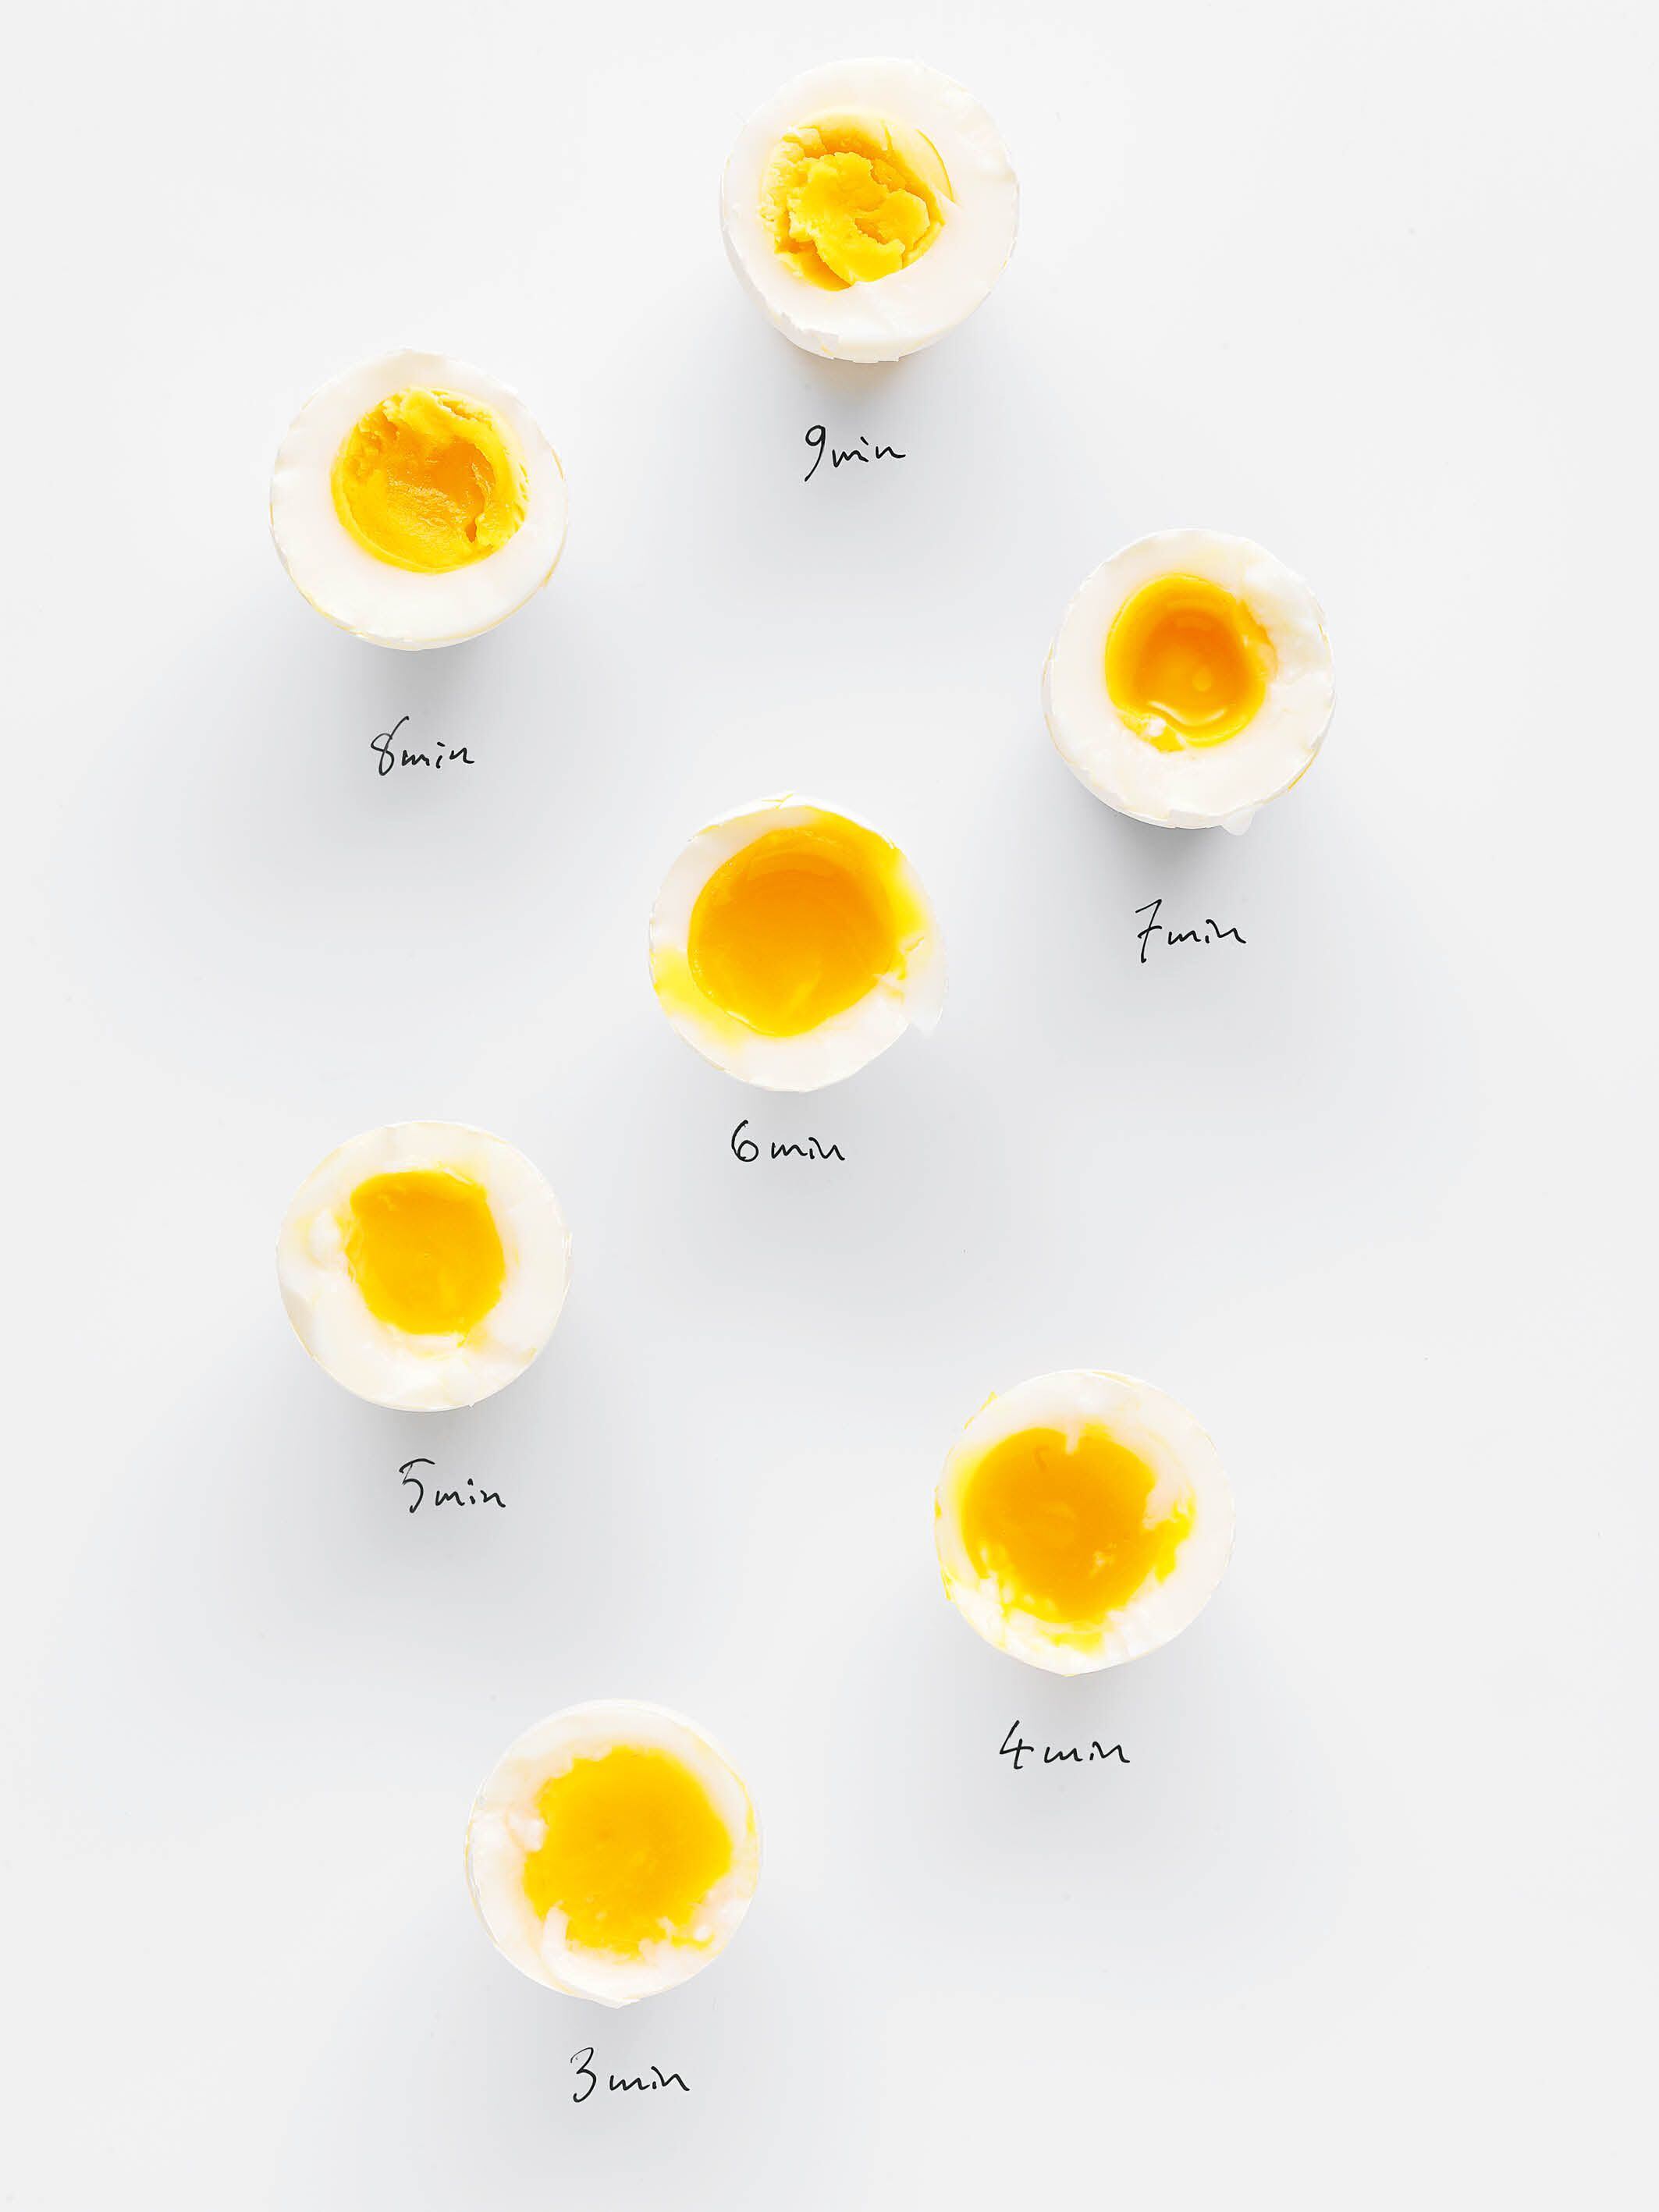 'Huevos: recetas y técnicas', de Tove Nilsson. Fotografía proporcionada por la editorial Col&Col.